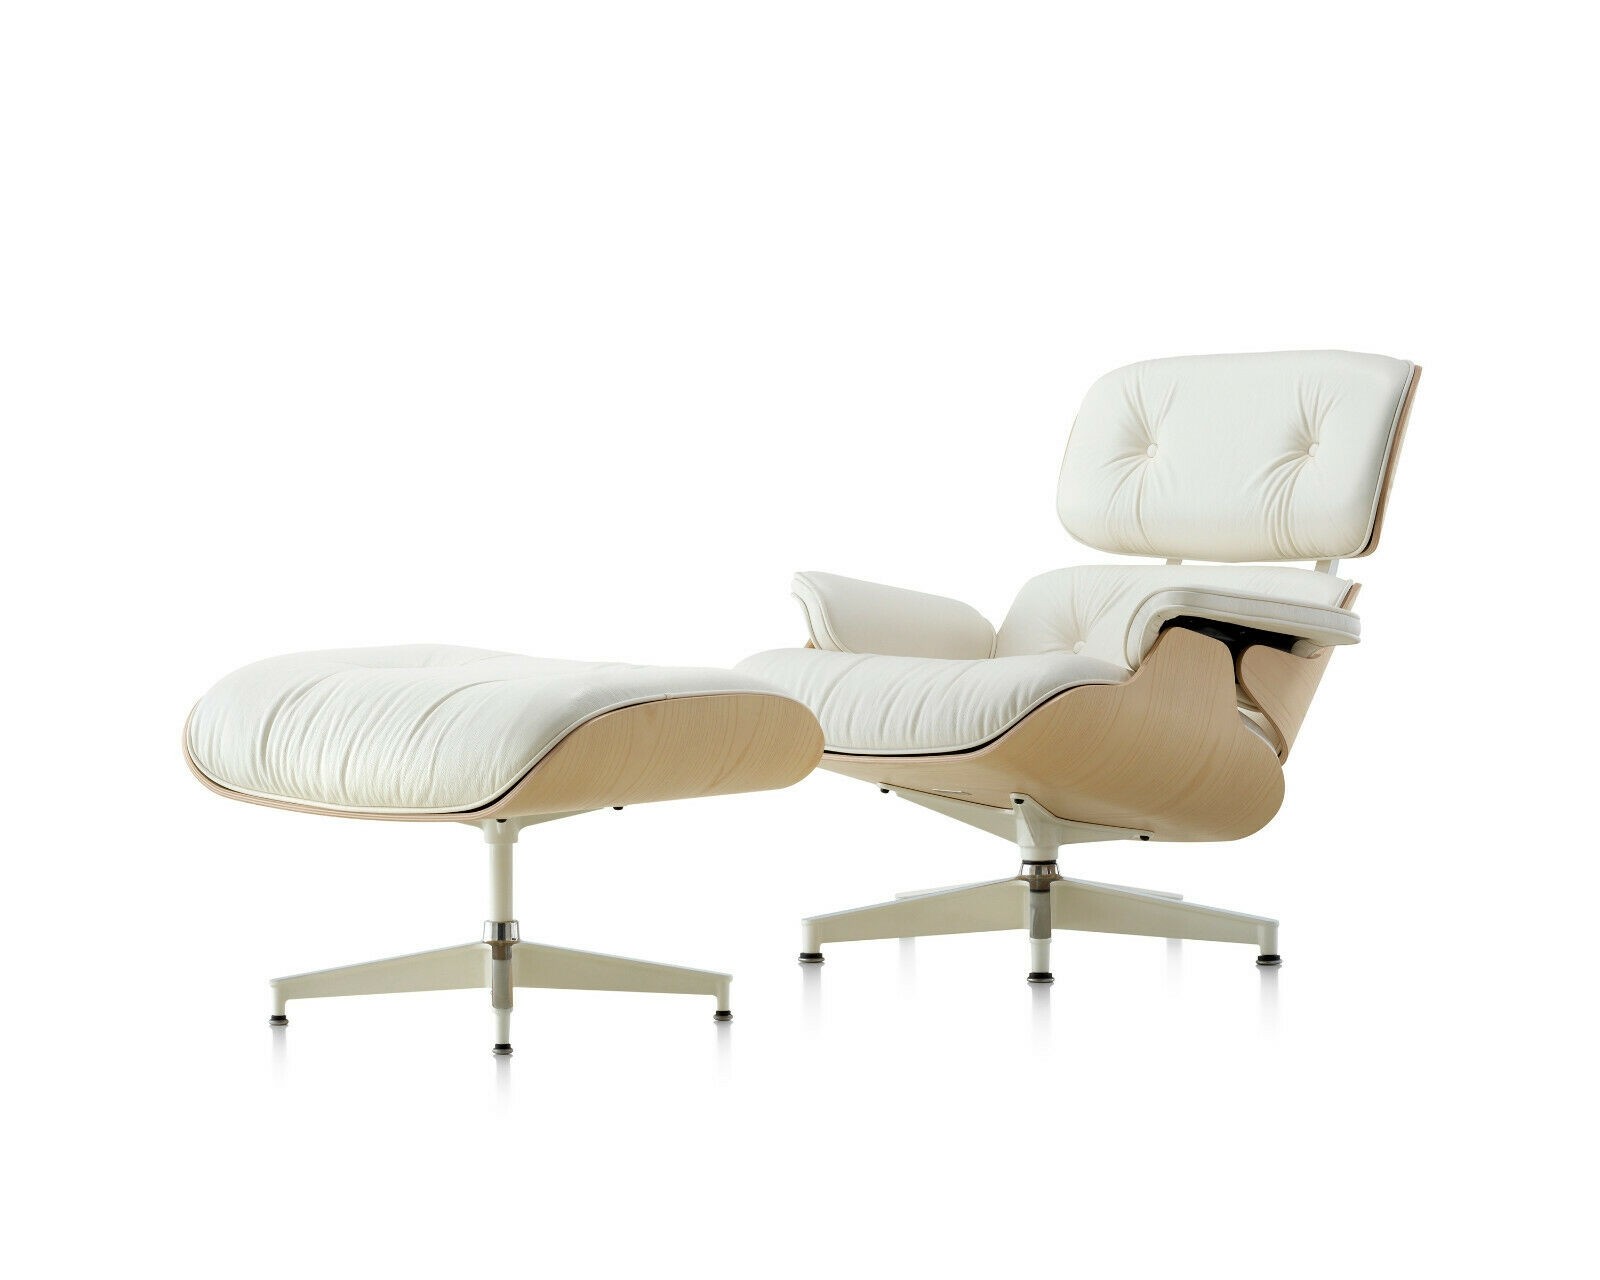 https://www.deplain.com/media/catalog/product/cache/1/image/9df78eab33525d08d6e5fb8d27136e95/v/i/vitra-lounge-chair-eames-ottoman-white-wood.jpg